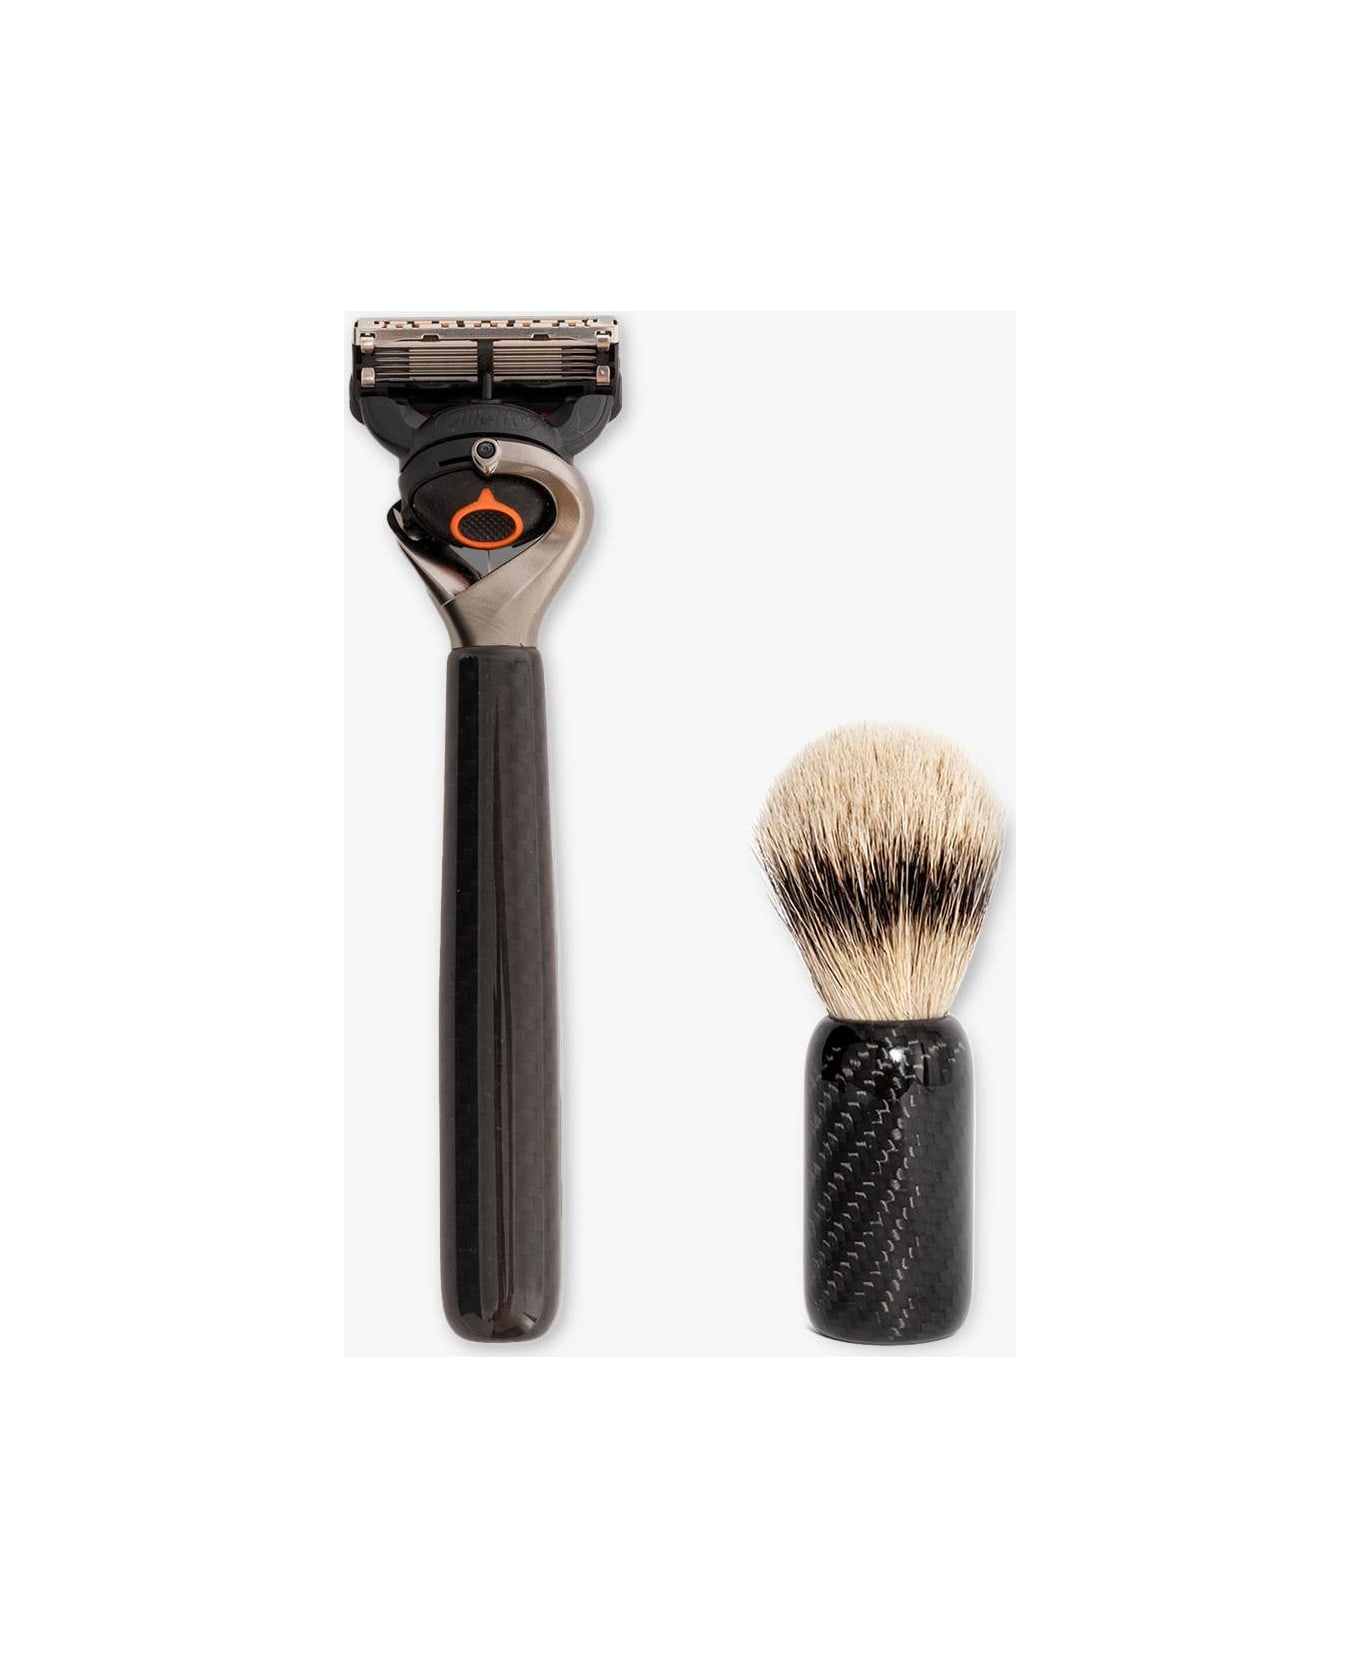 Larusmiani Carbon Fiber Shaving Brush Beauty - Black